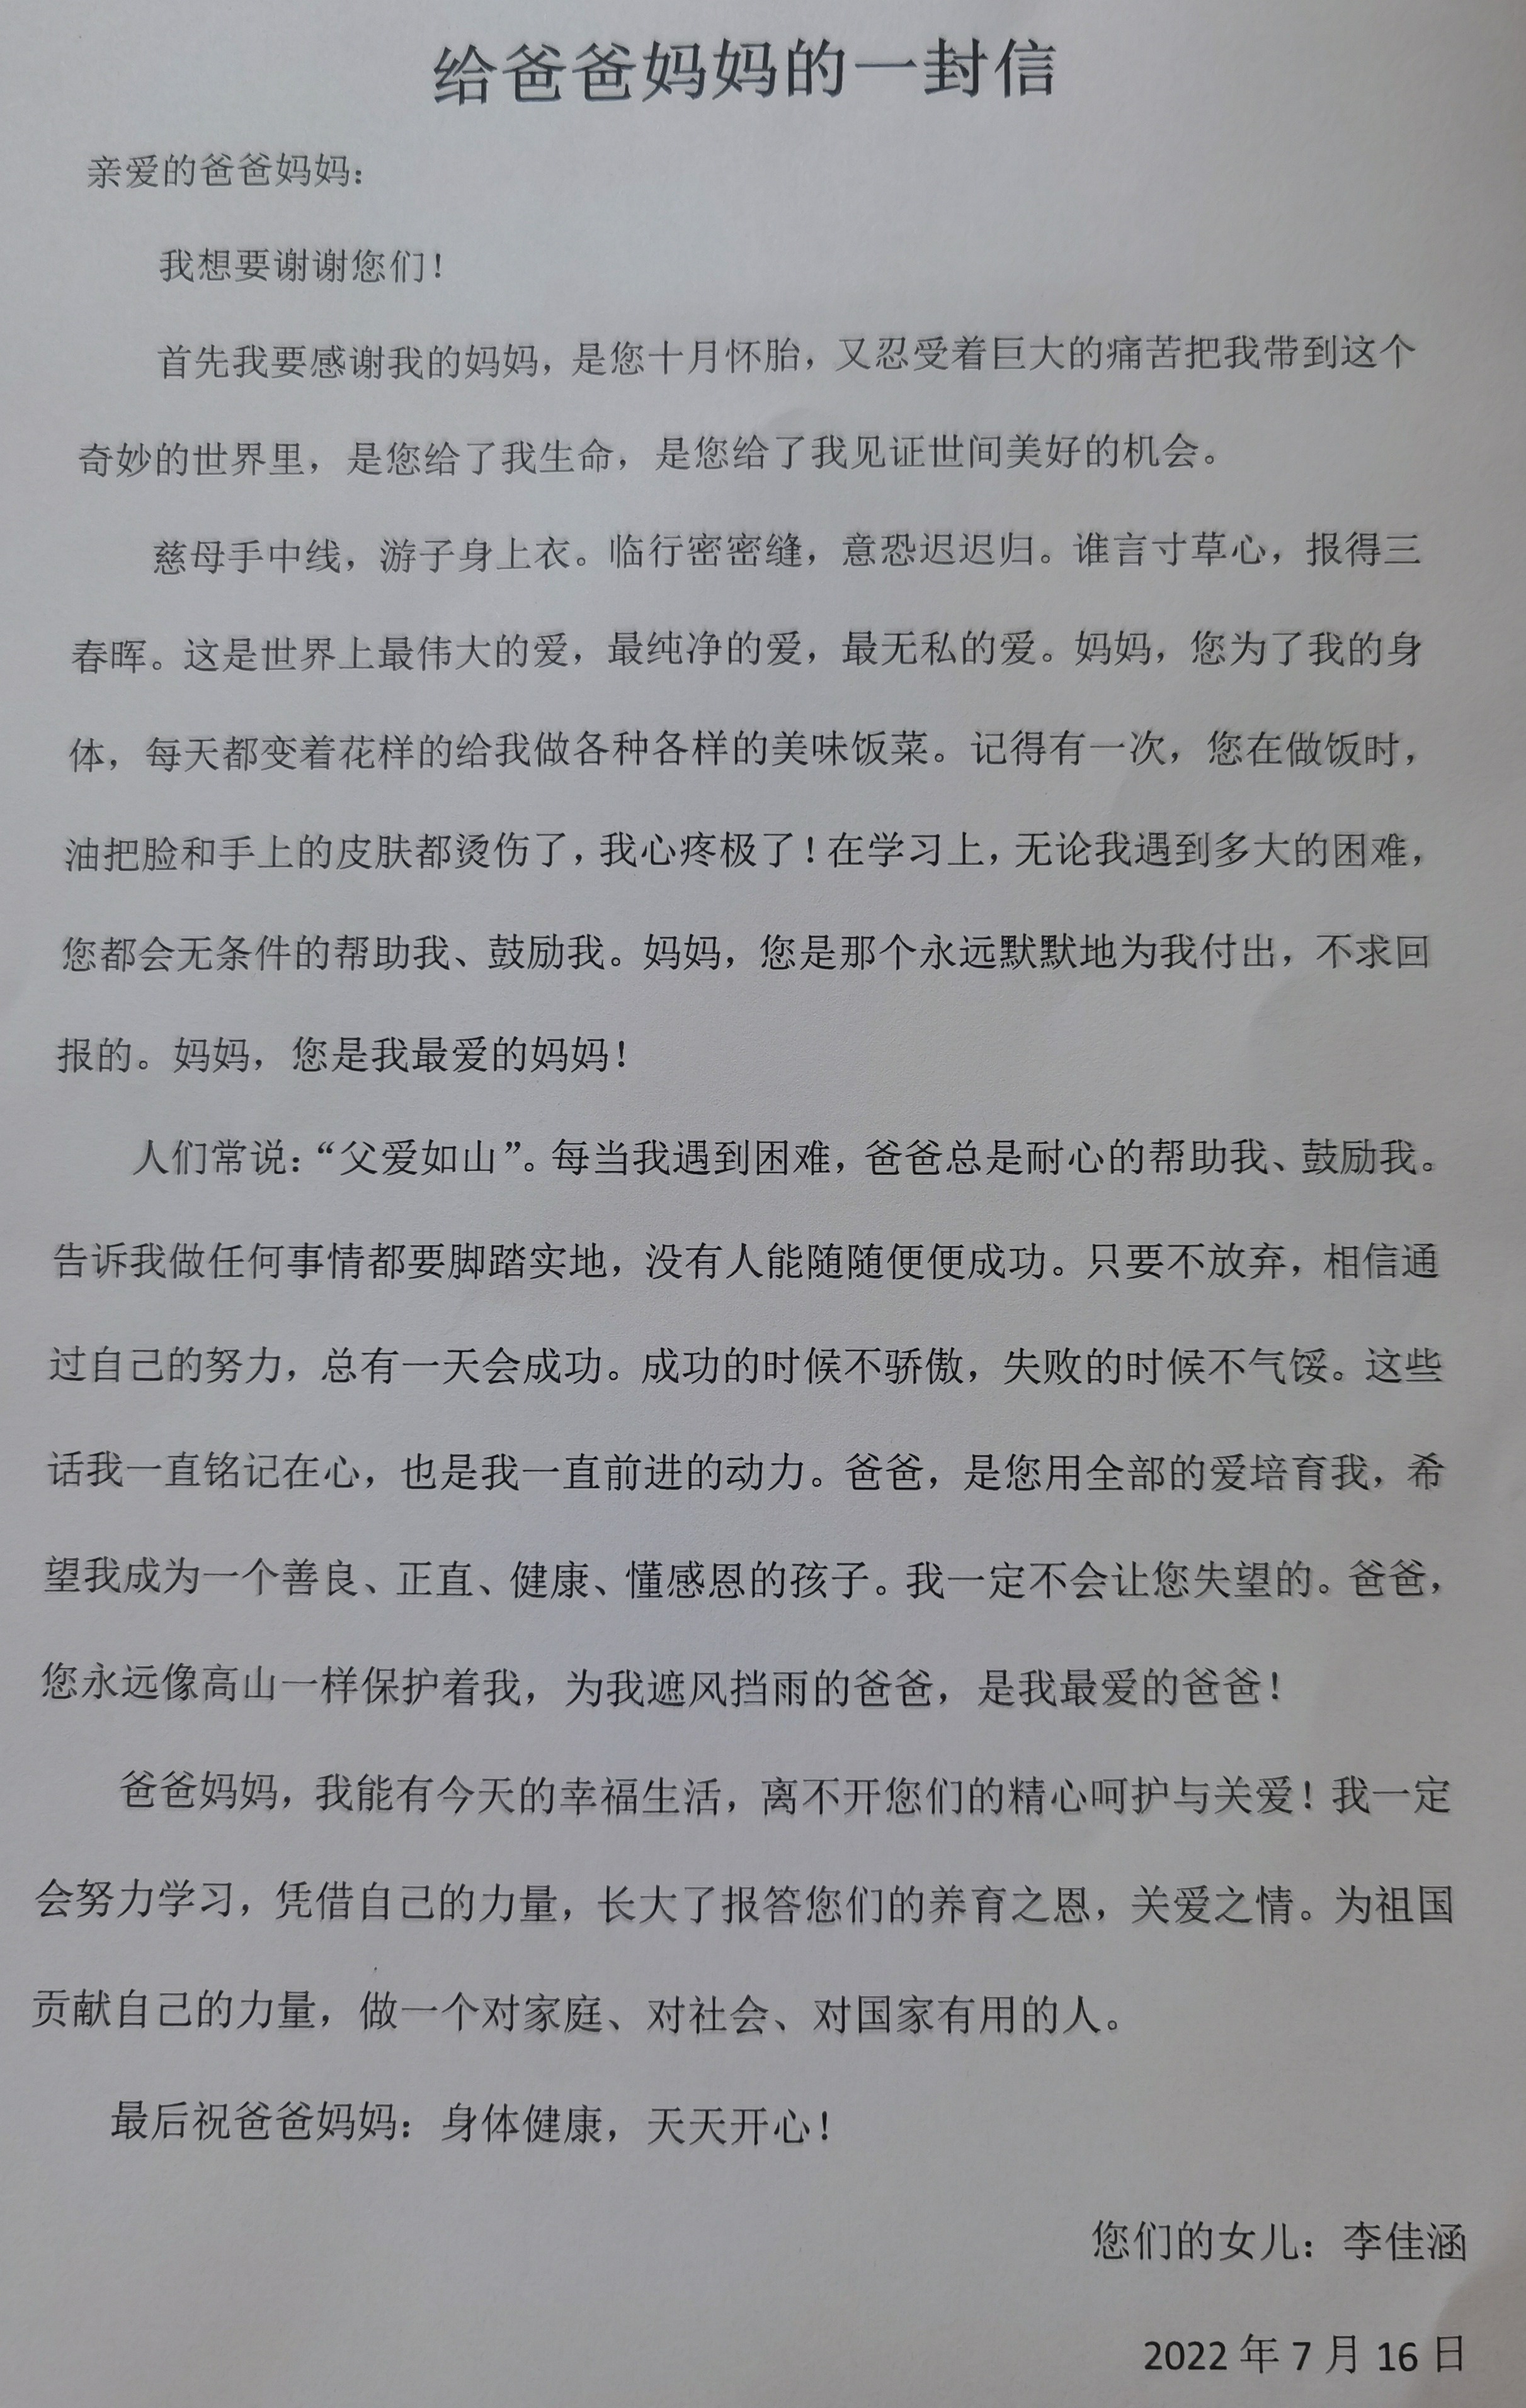 少年领读者一封家书x0385丨李佳涵给爸爸妈妈的一封信